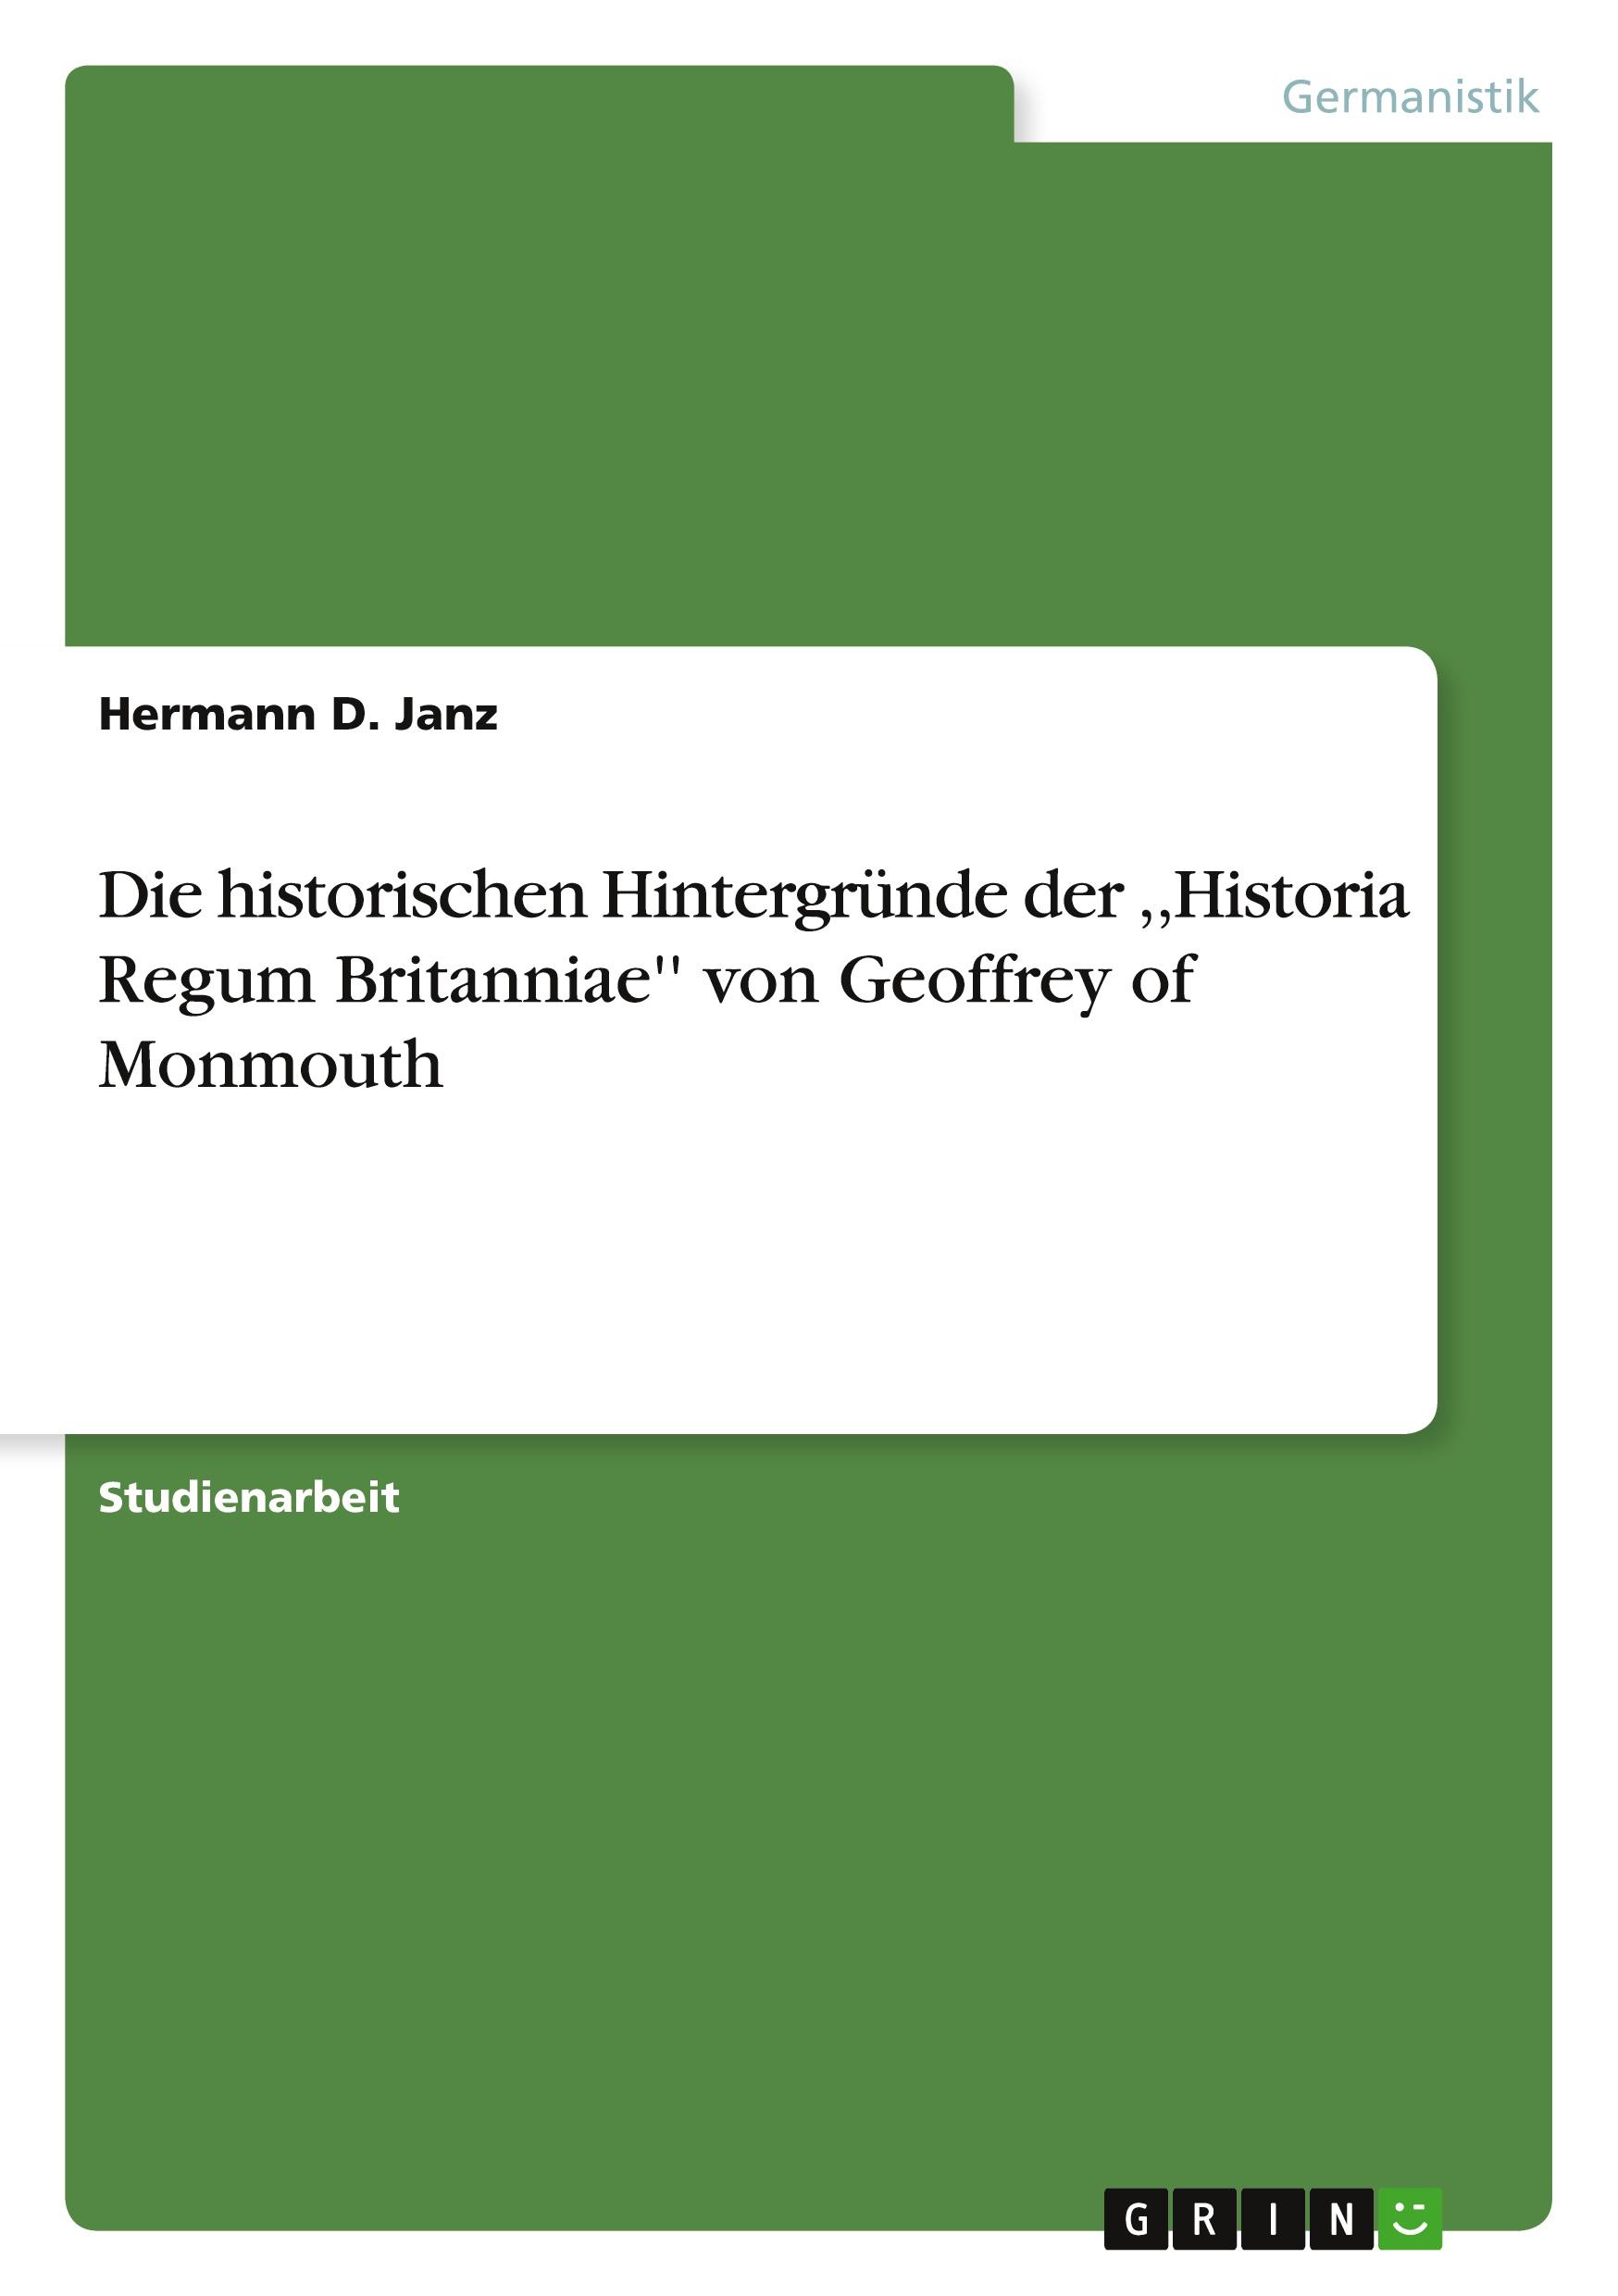 Die historischen Hintergründe der ,,Historia Regum Britanniae'' von Geoffrey of Monmouth / Hermann D. Janz / Taschenbuch / Paperback / 24 S. / Deutsch / 2010 / GRIN Verlag / EAN 9783640667734 - Janz, Hermann D.